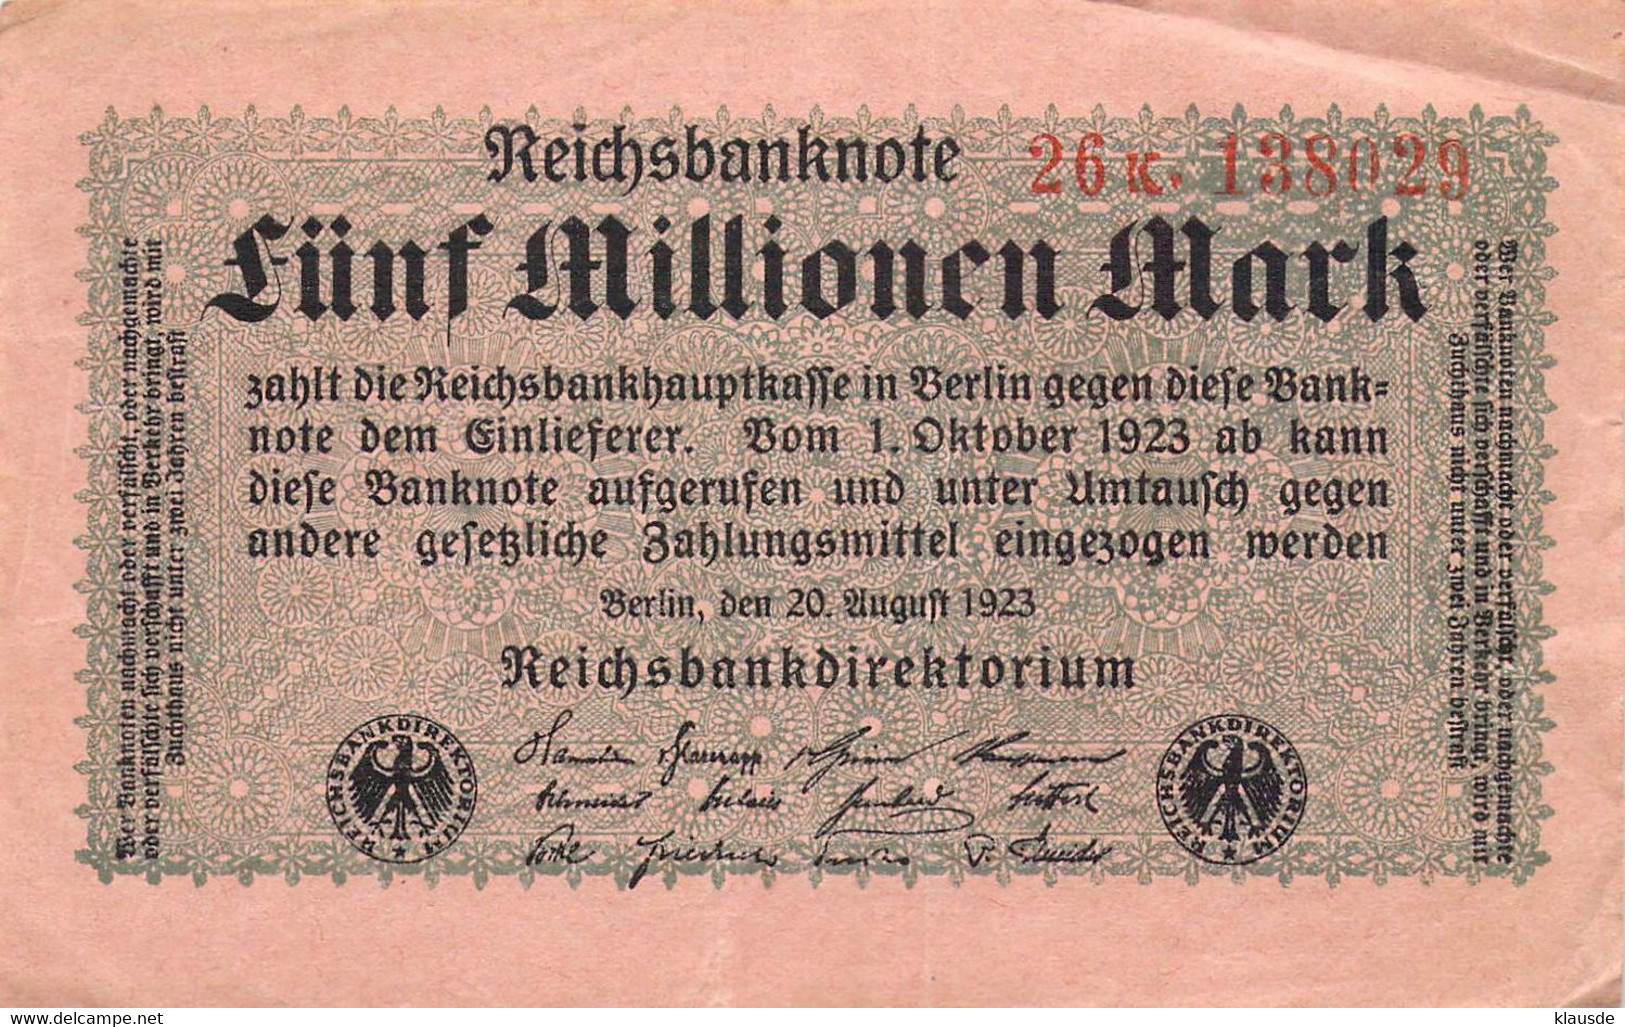 5 Mio Mark 1923 Deutsche Reichsbanknote VG/G (IV) - 5 Millionen Mark